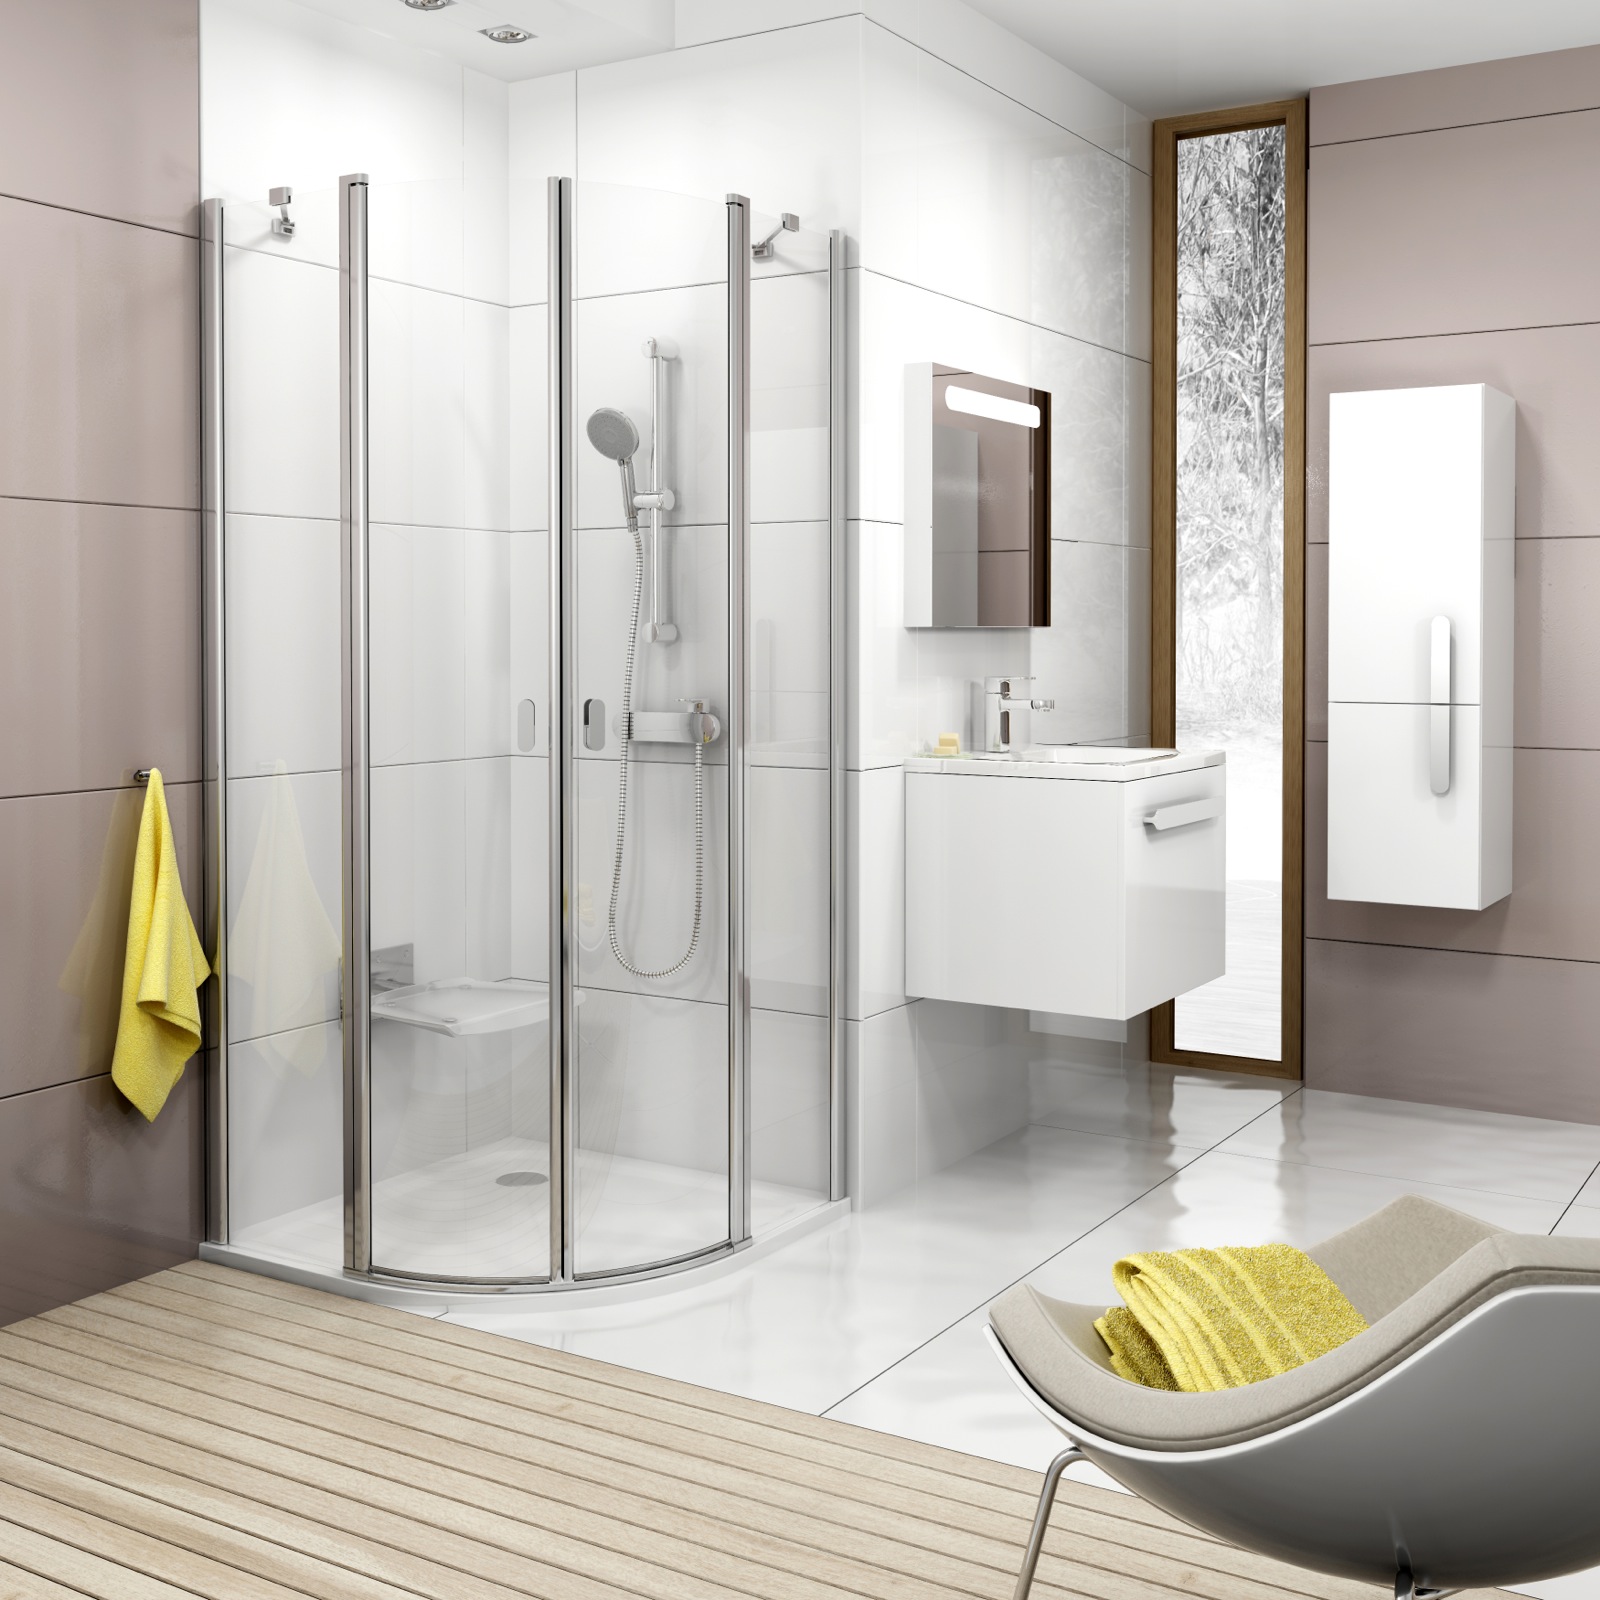 A Chrome zuhanyzó illeszkedik a fürdőszoba-koncepcióhoz ovális, krómozott elemeivel, praktikus kialakításával és precíz formatervezésével.